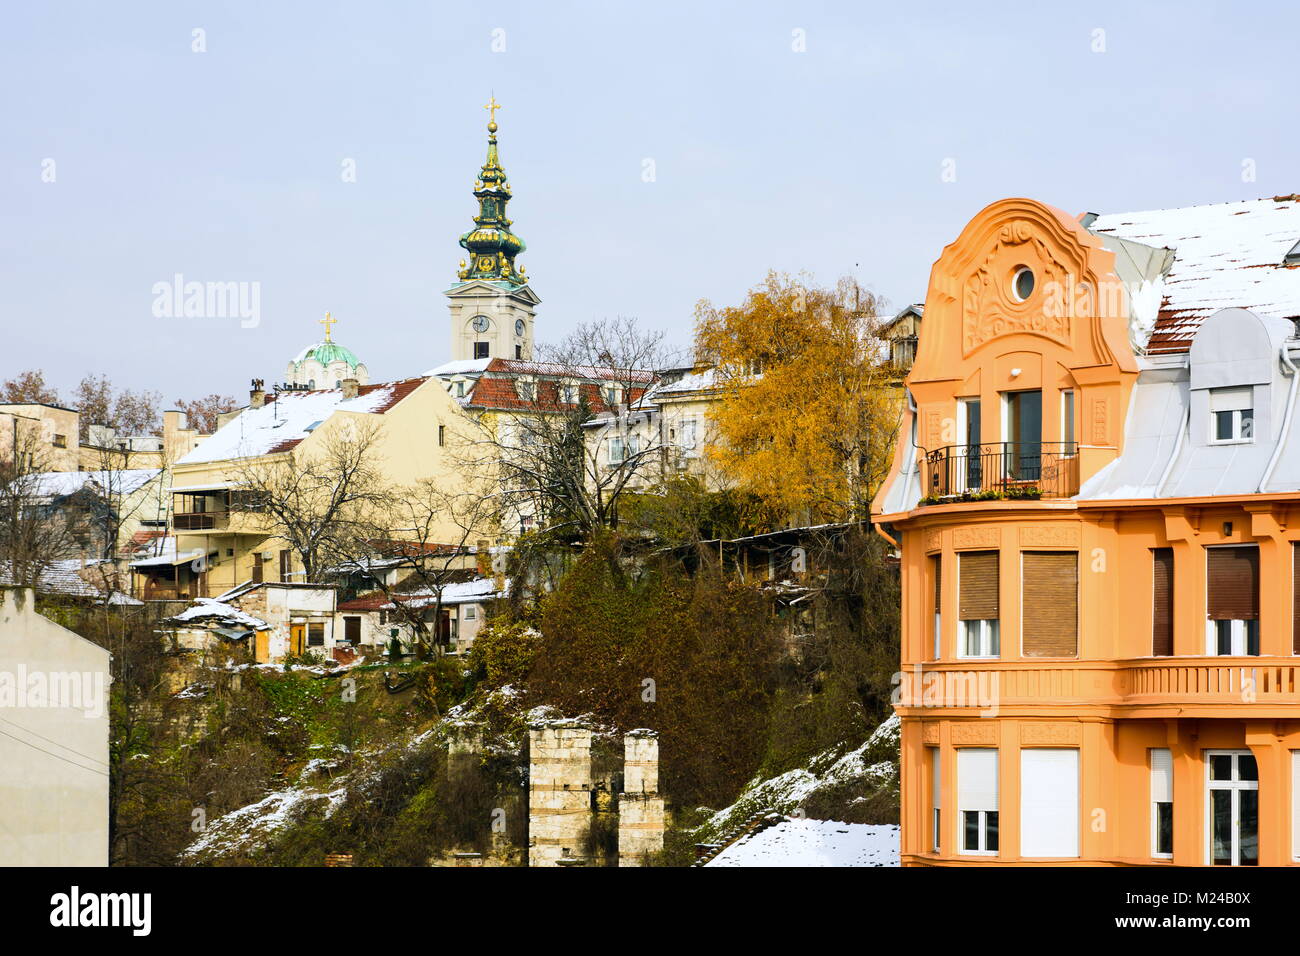 A Belgrado, in Serbia - 4 dicembre 2017: Belgrado scena invernale con coperte di neve i dettagli di costruzione vista dal ponte Branko nell'area centrale della città Foto Stock